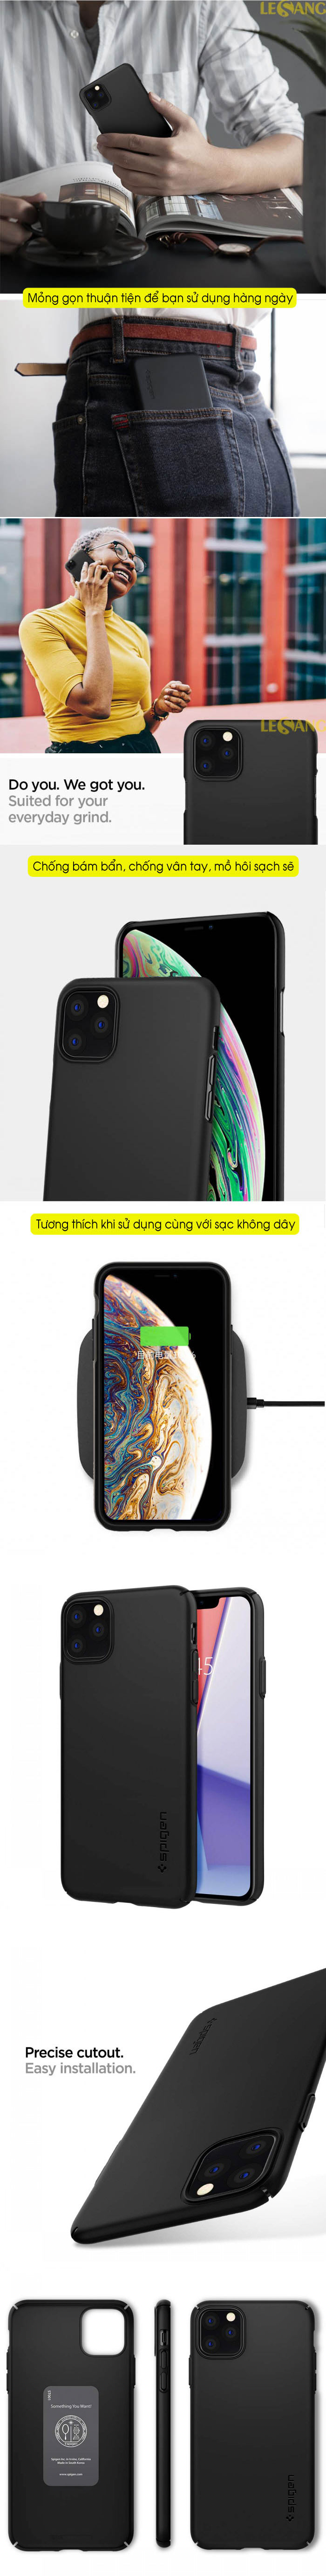 Ốp lưng iPhone 11 Pro Max Spigen Thin Fit Air 3